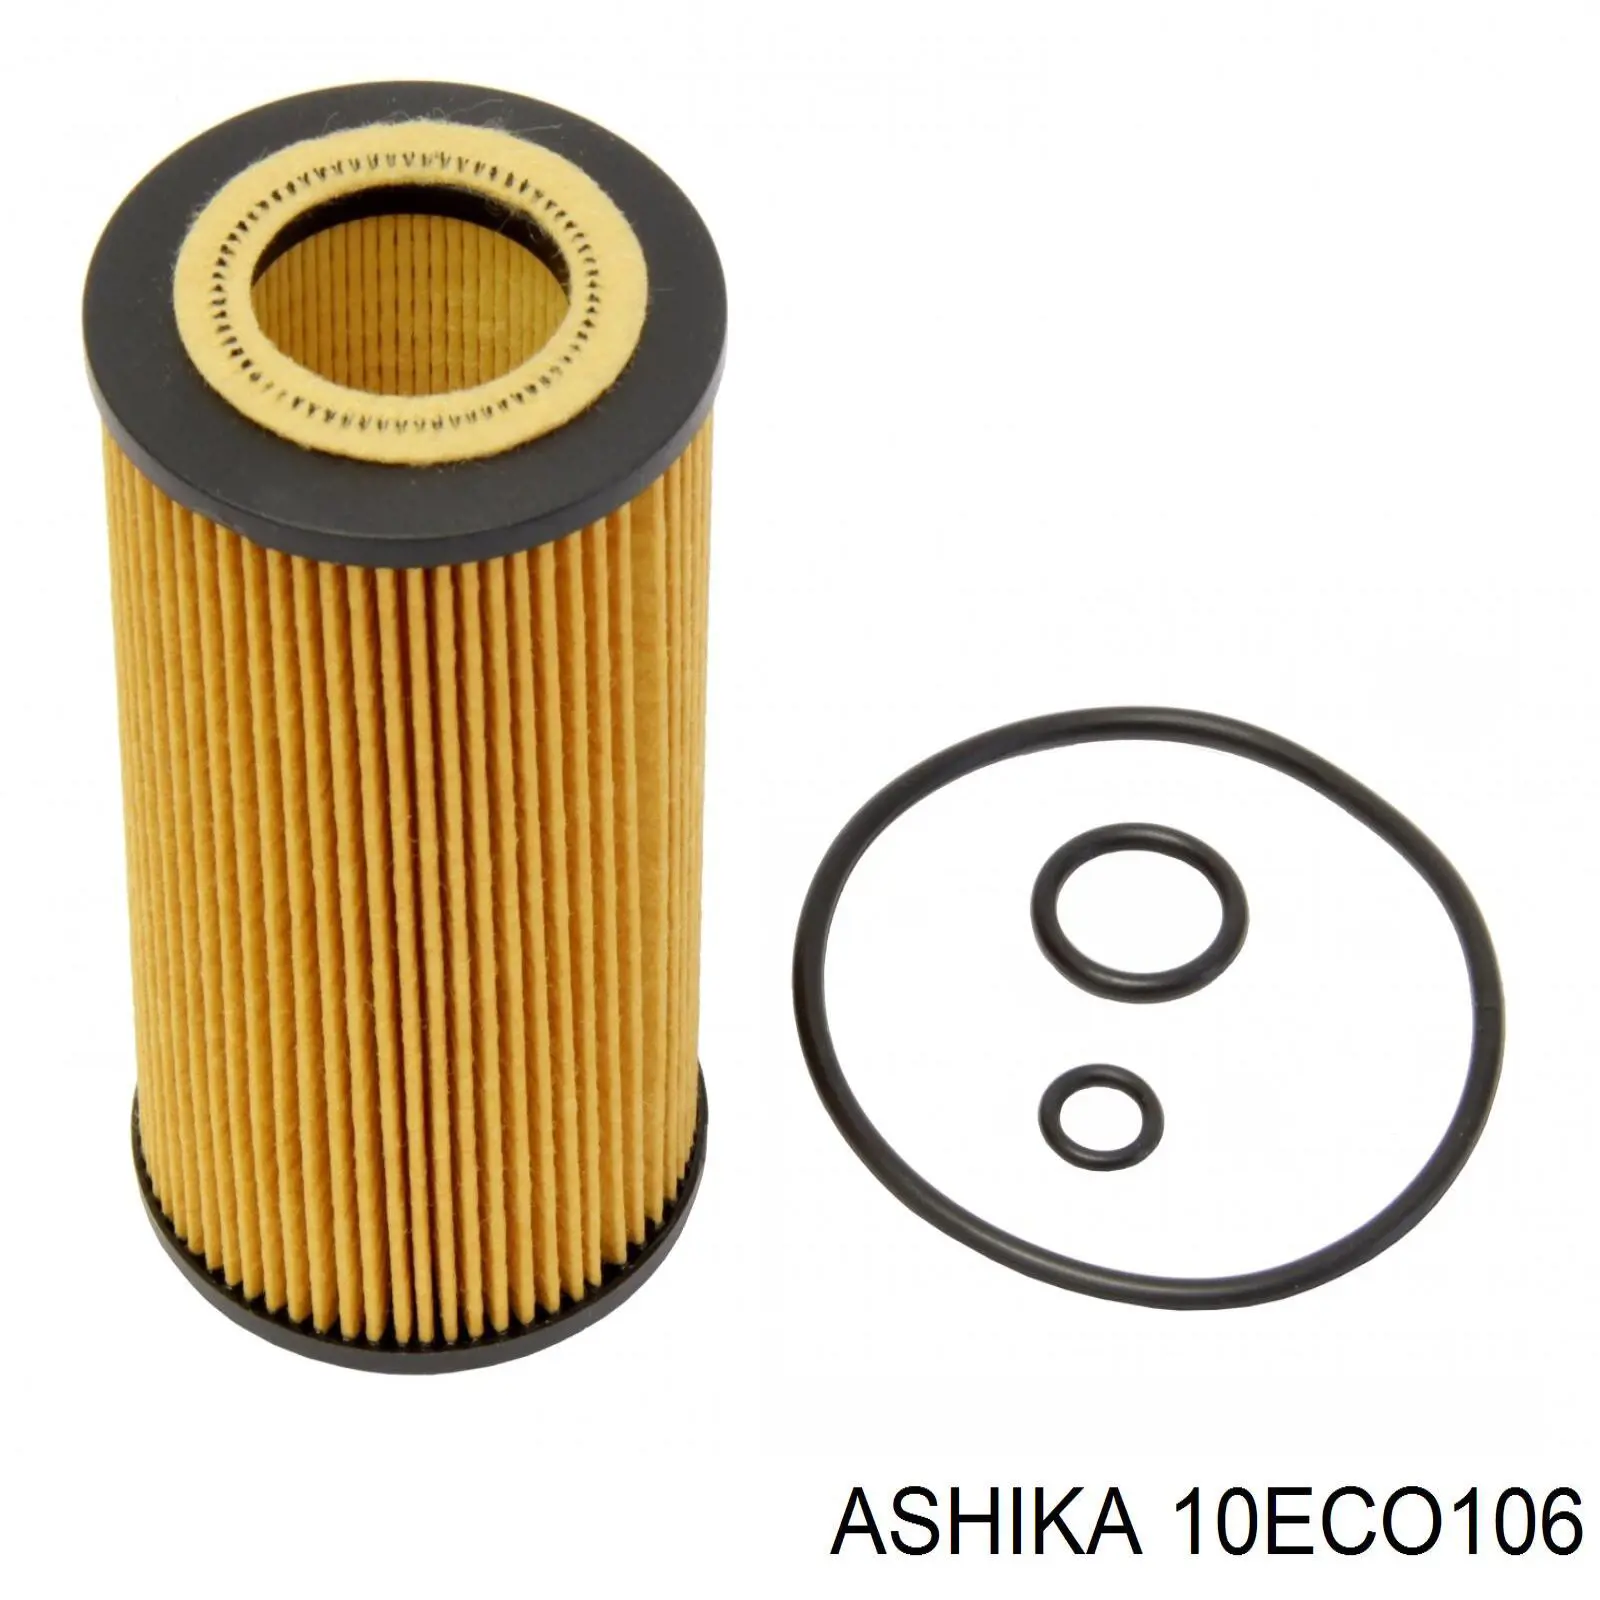 10ECO106 Ashika filtro de aceite